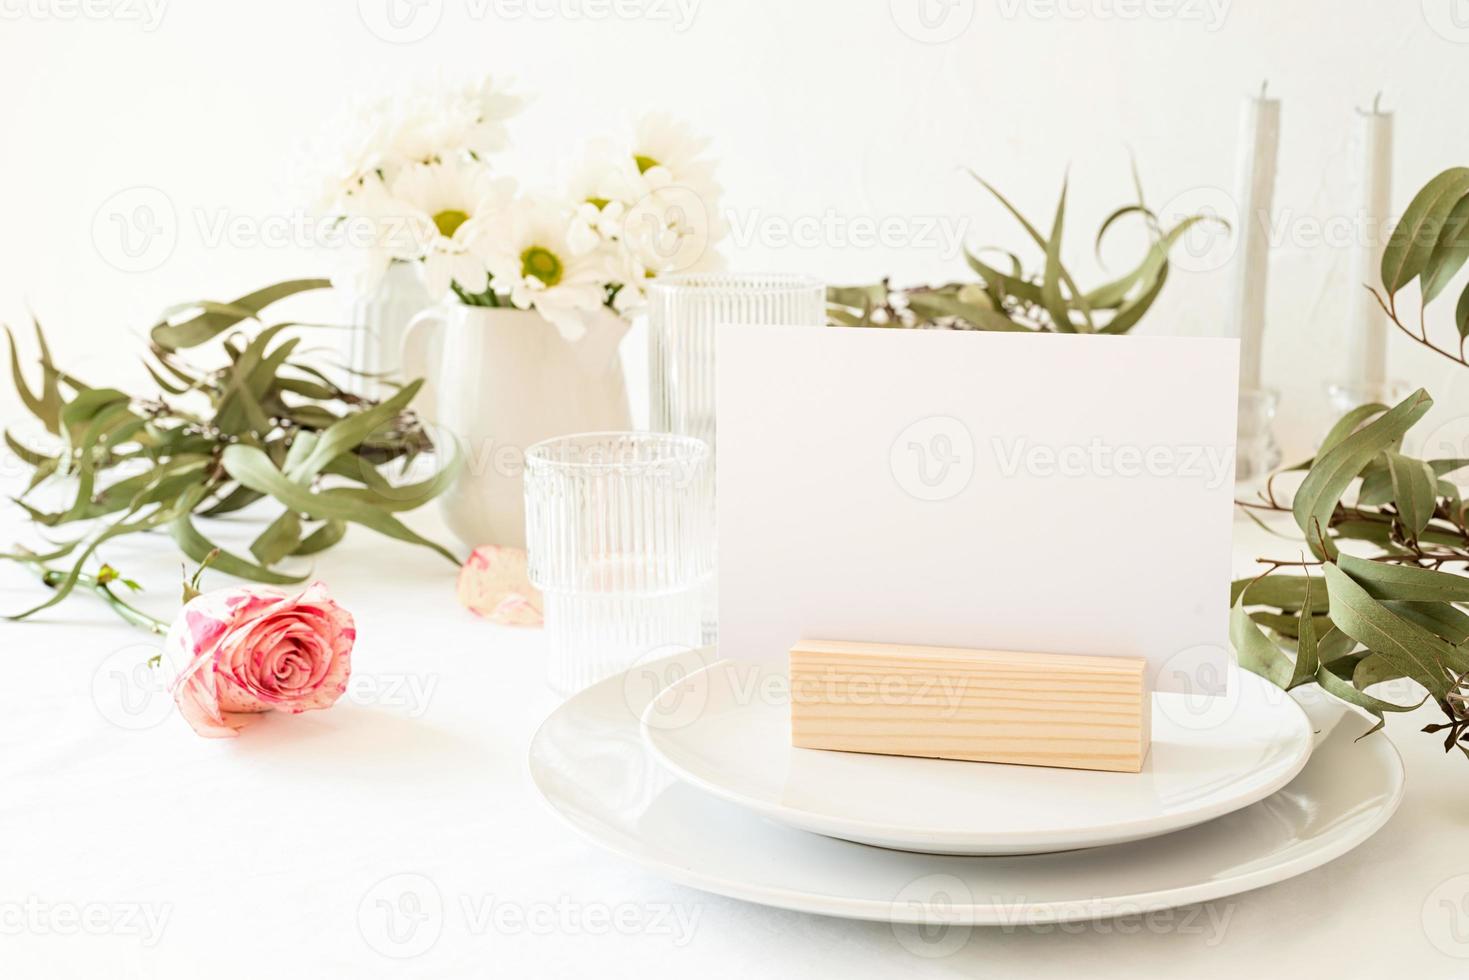 Simulacros de carpa de mesa, menú o soporte para folleto en la mesa del restaurante foto